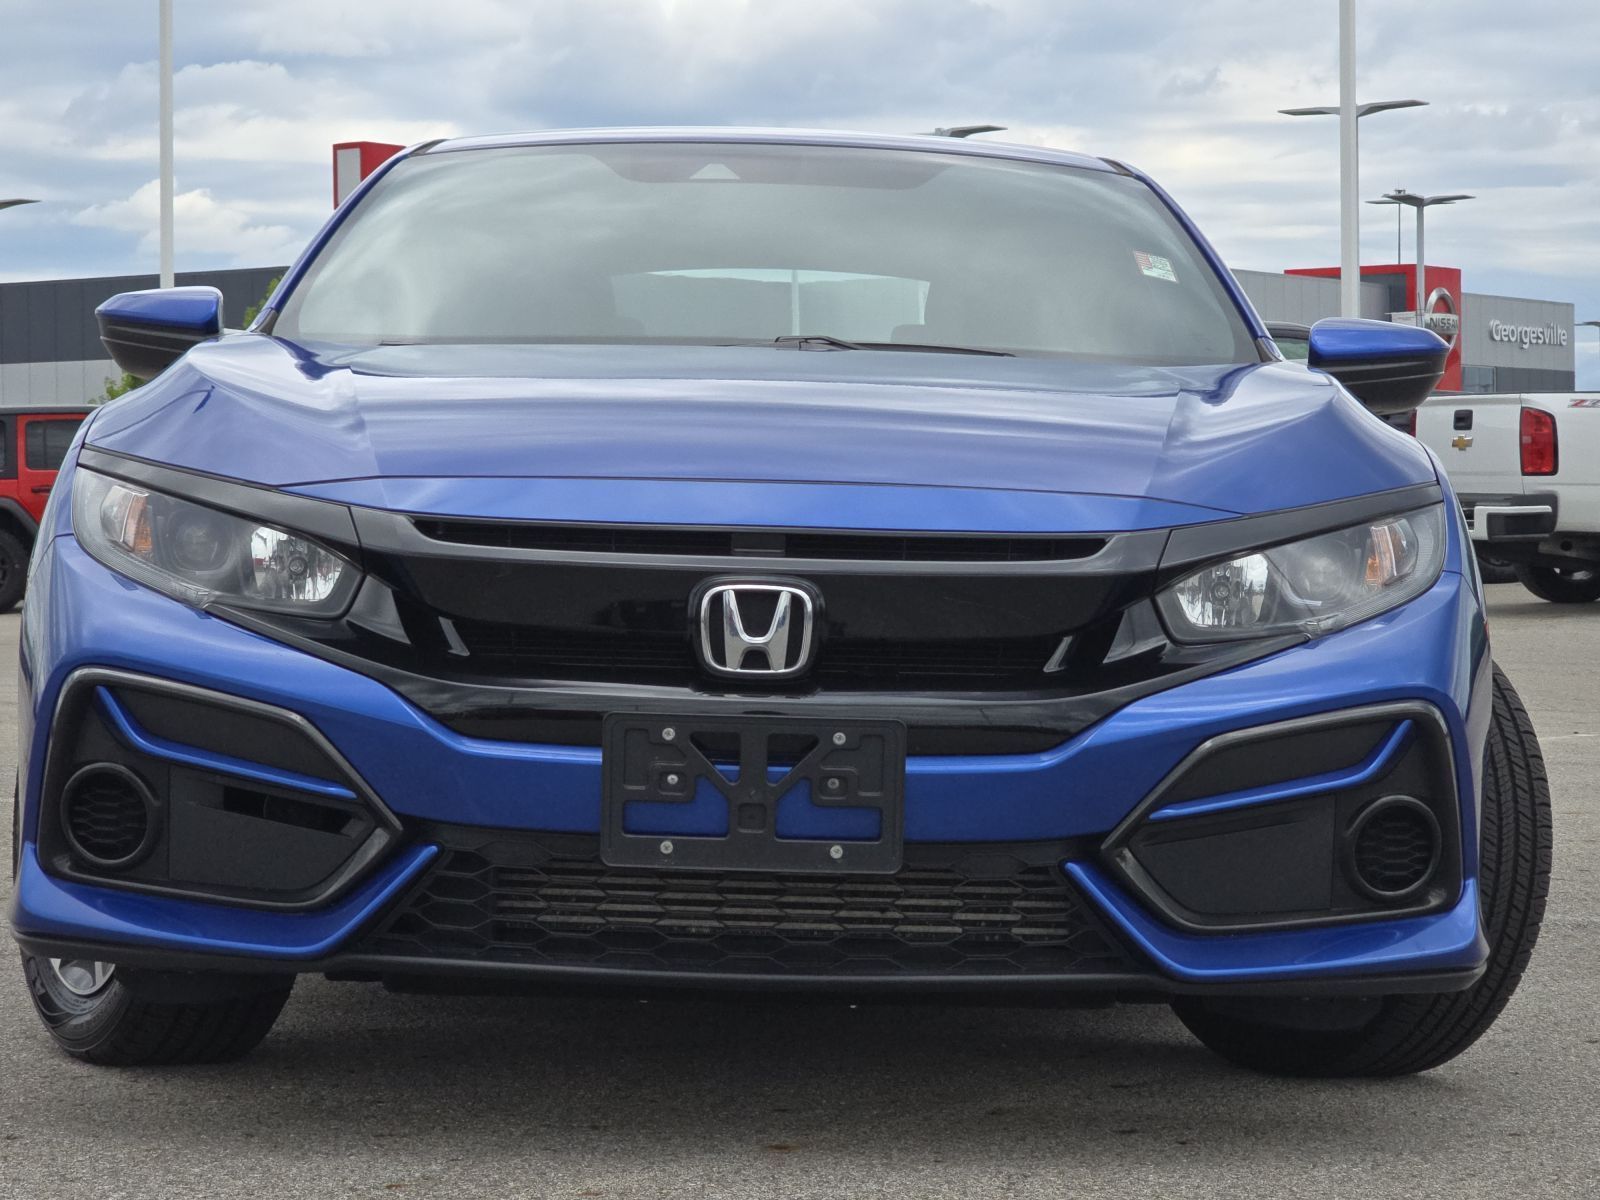 Used, 2020 Honda Civic LX CVT, Blue, G0730A-12